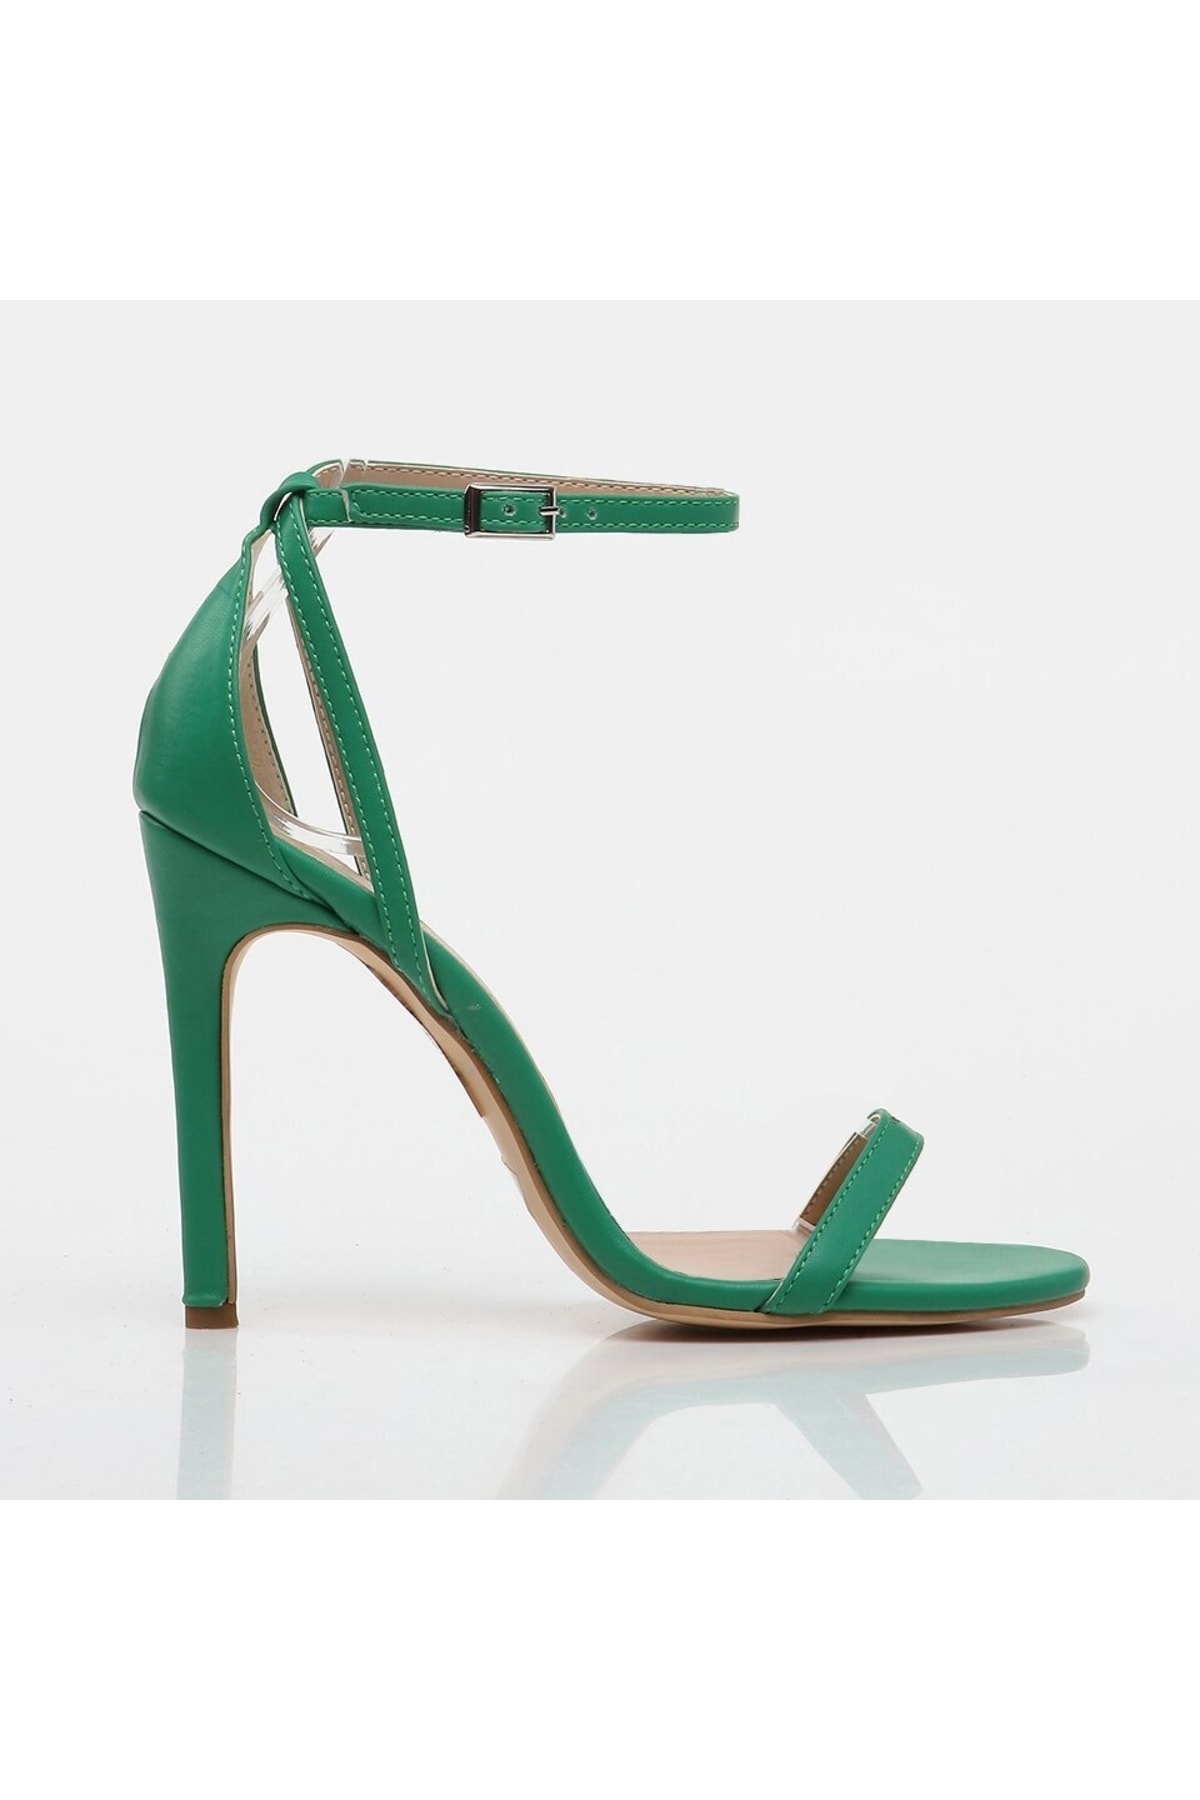 Hotiç Green Women's Heeled Sandals